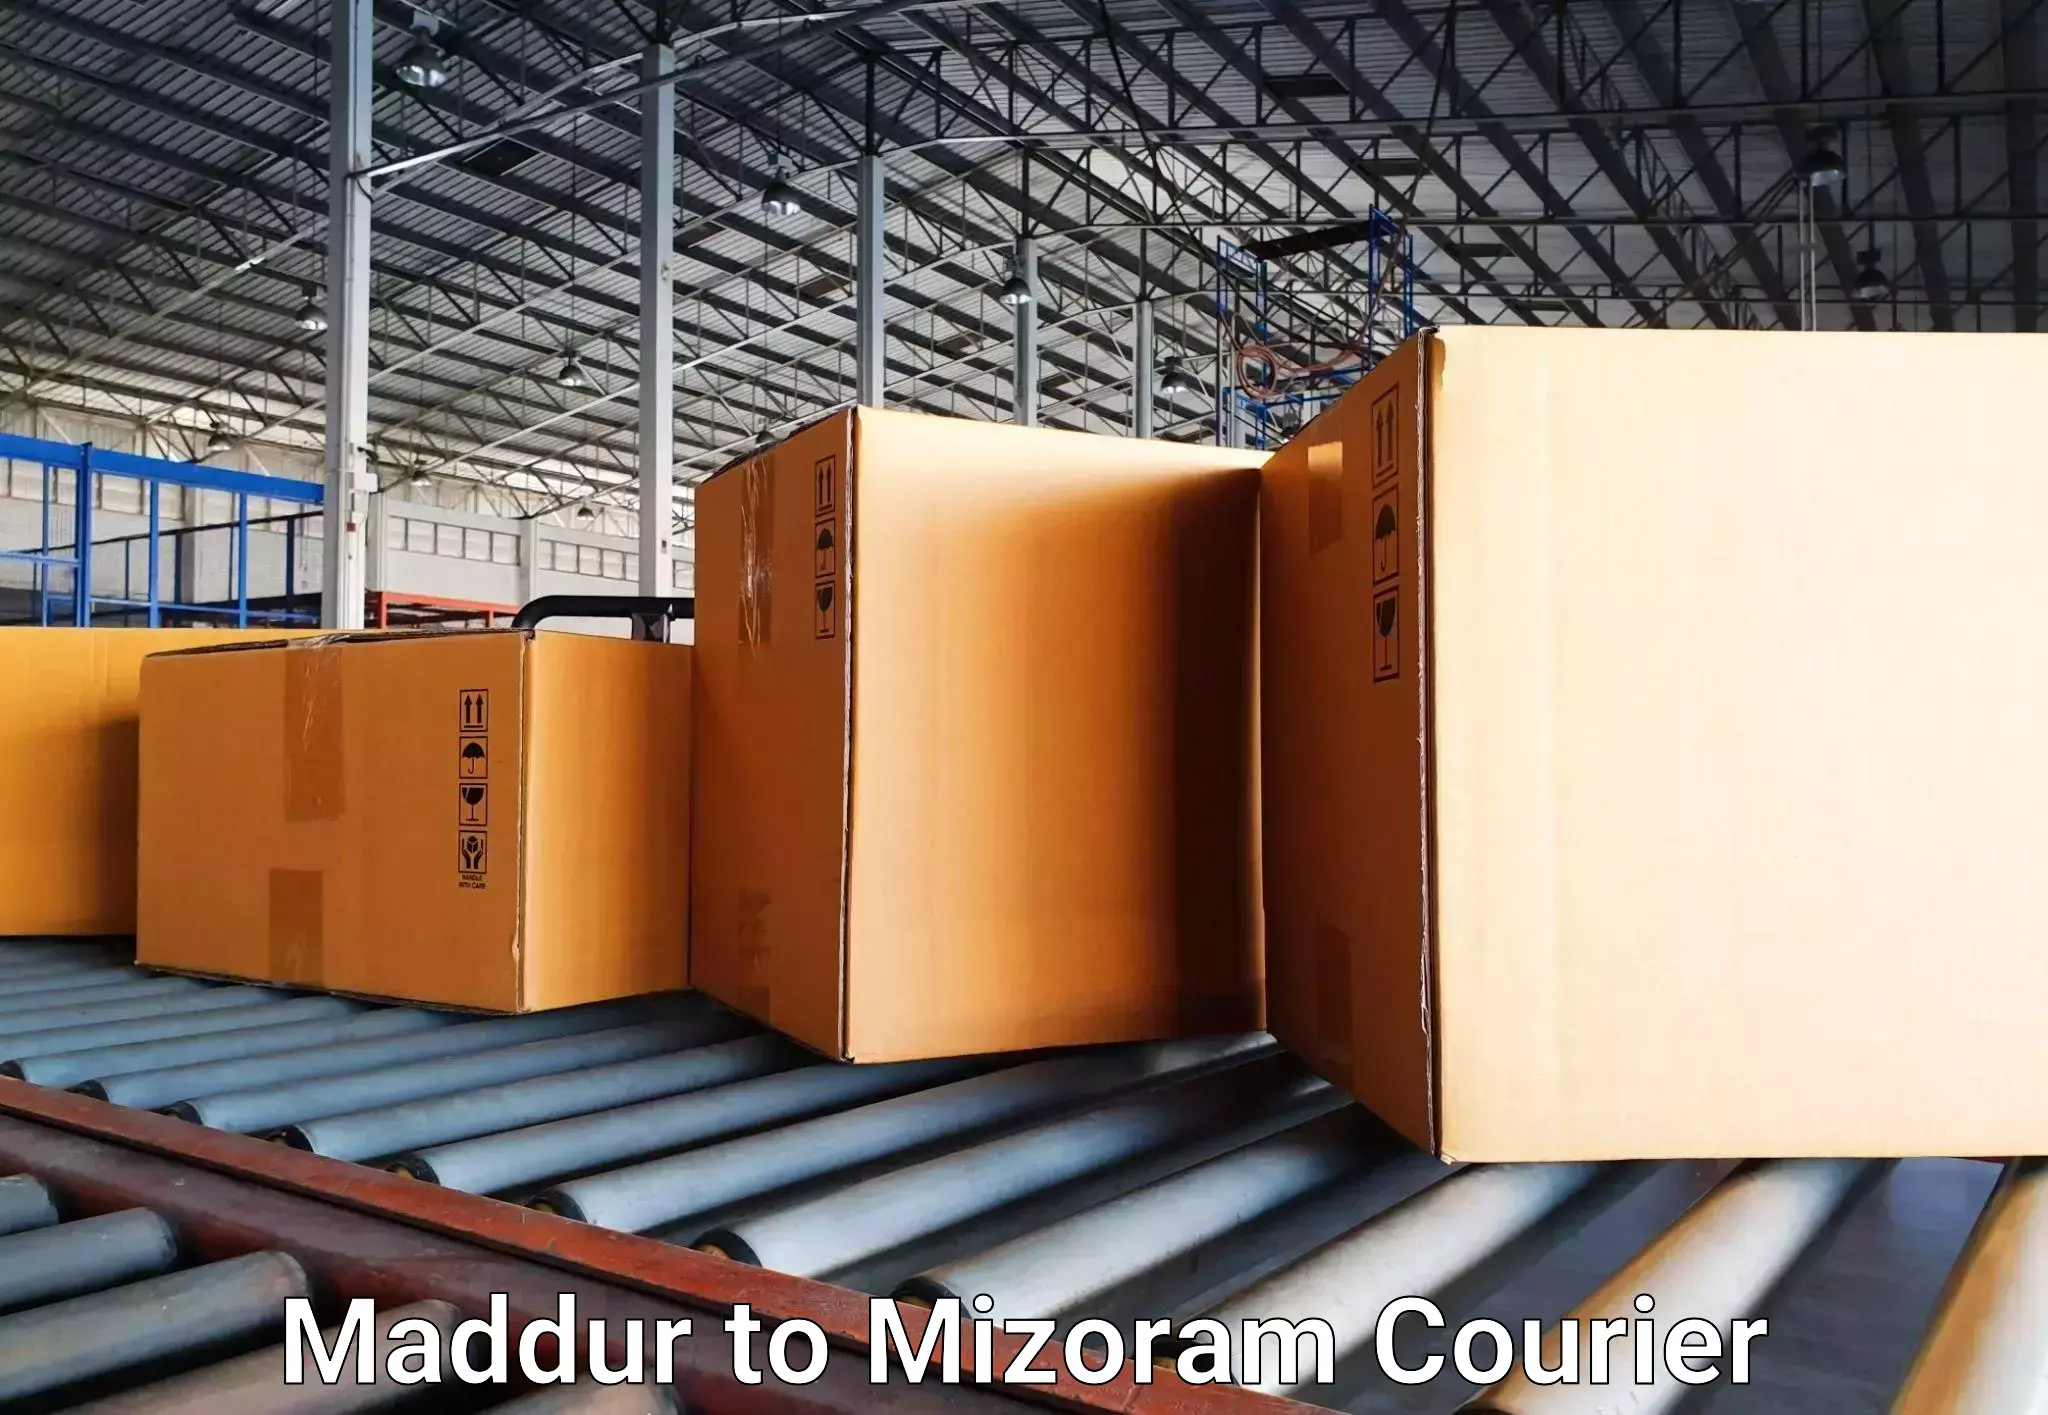 Door-to-door baggage service in Maddur to Mizoram